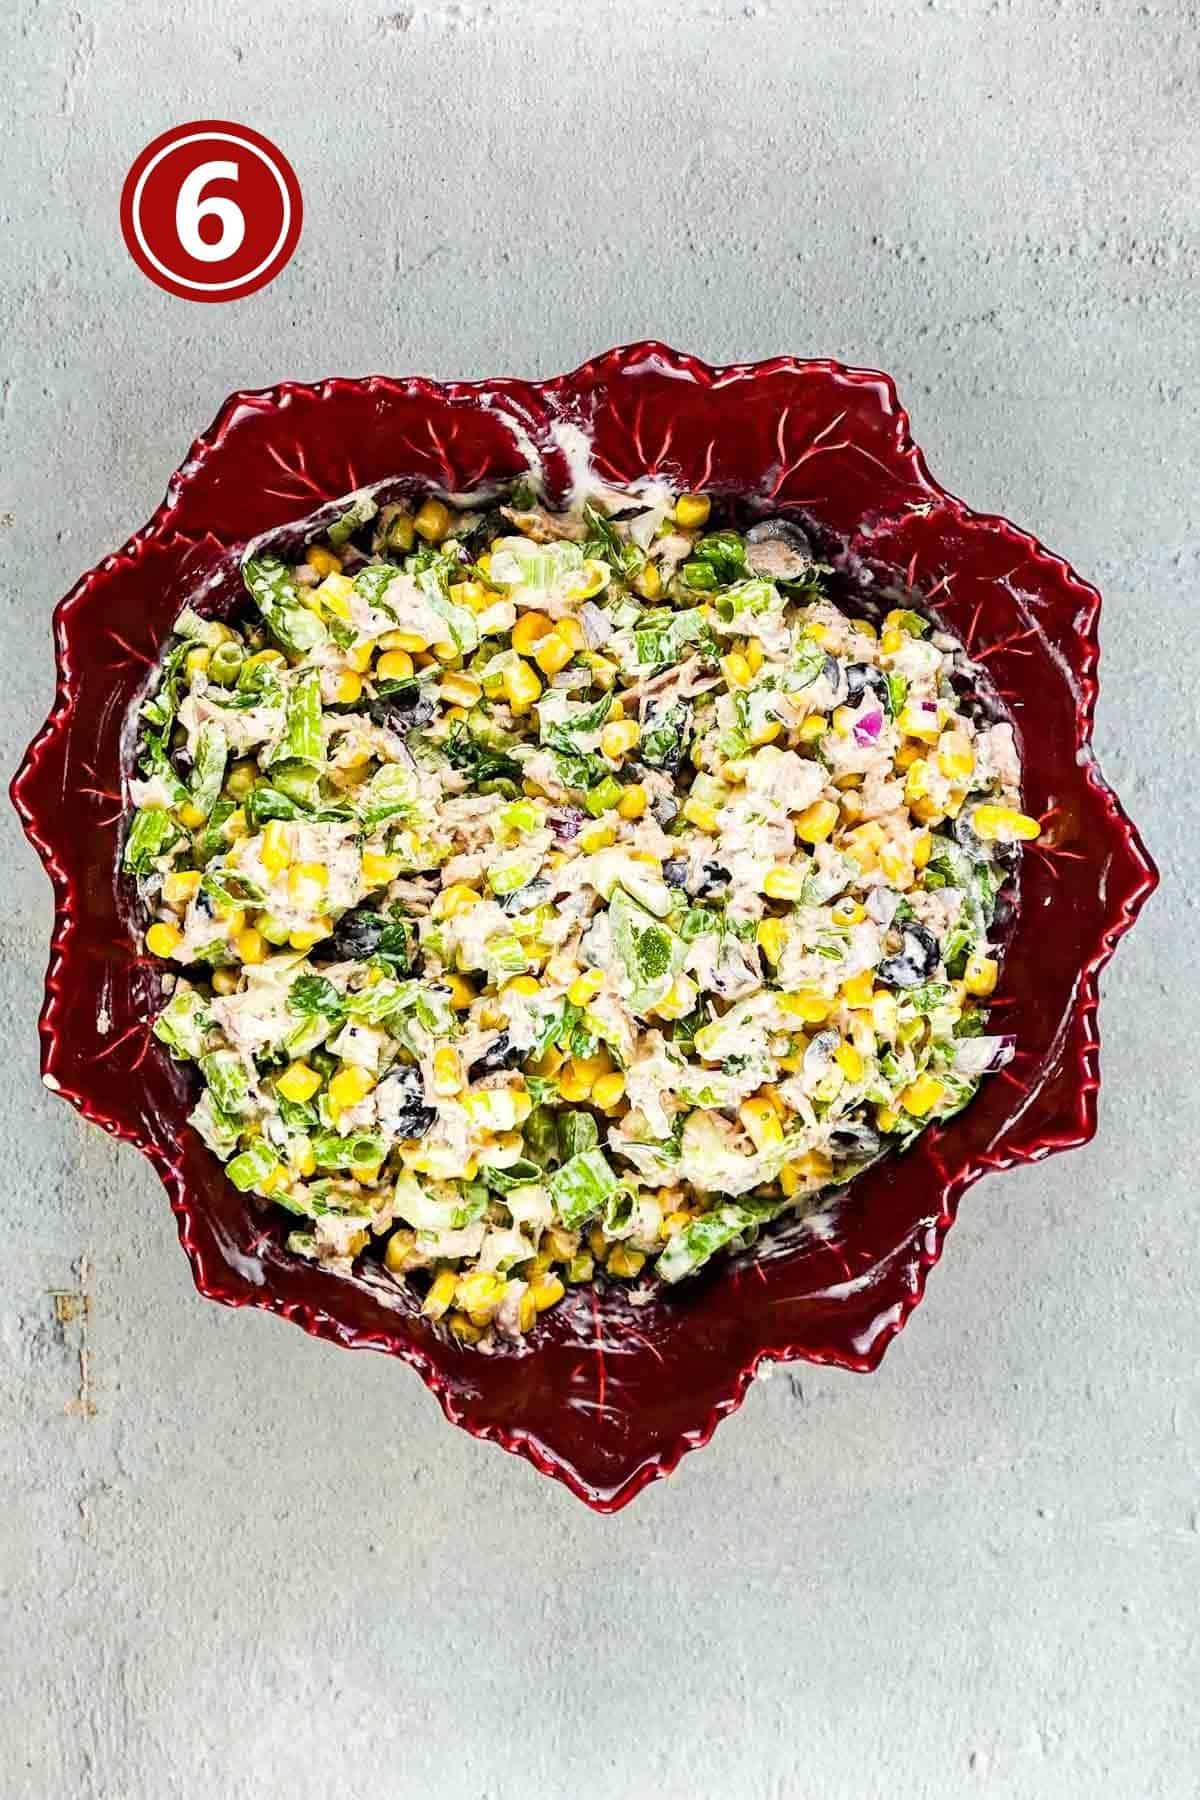 prepared tuna corn salad in a red bowl.